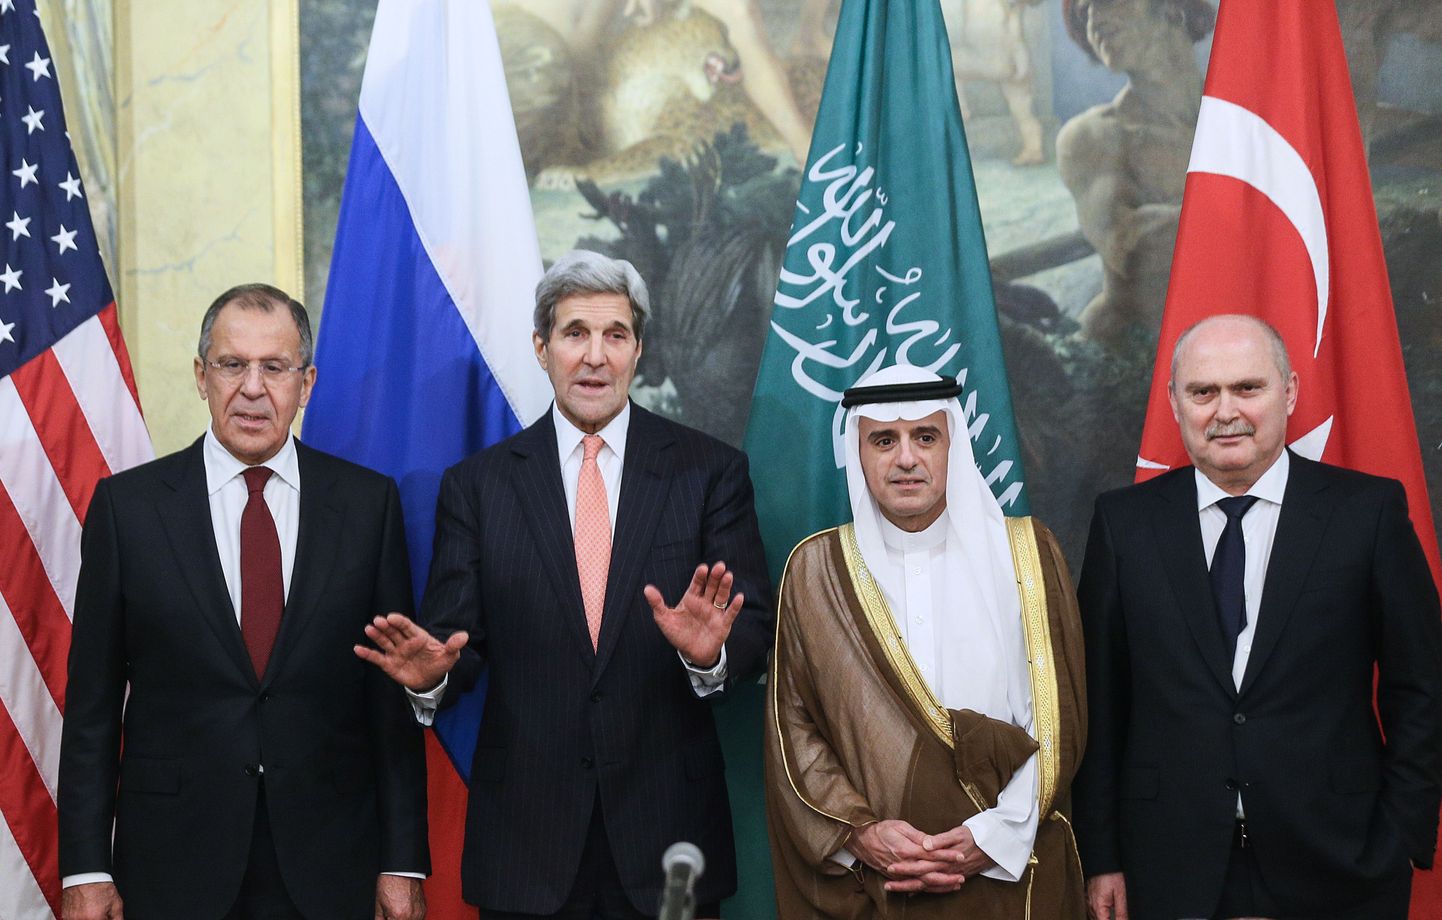 Vene välisminister Sergei Lavrov, USA välisminister John Kerry, Saudi Araabia välisminister Adel al-Jubeir ja Türgi välisminister Feridun Sinirlioğlu kohtumisel.